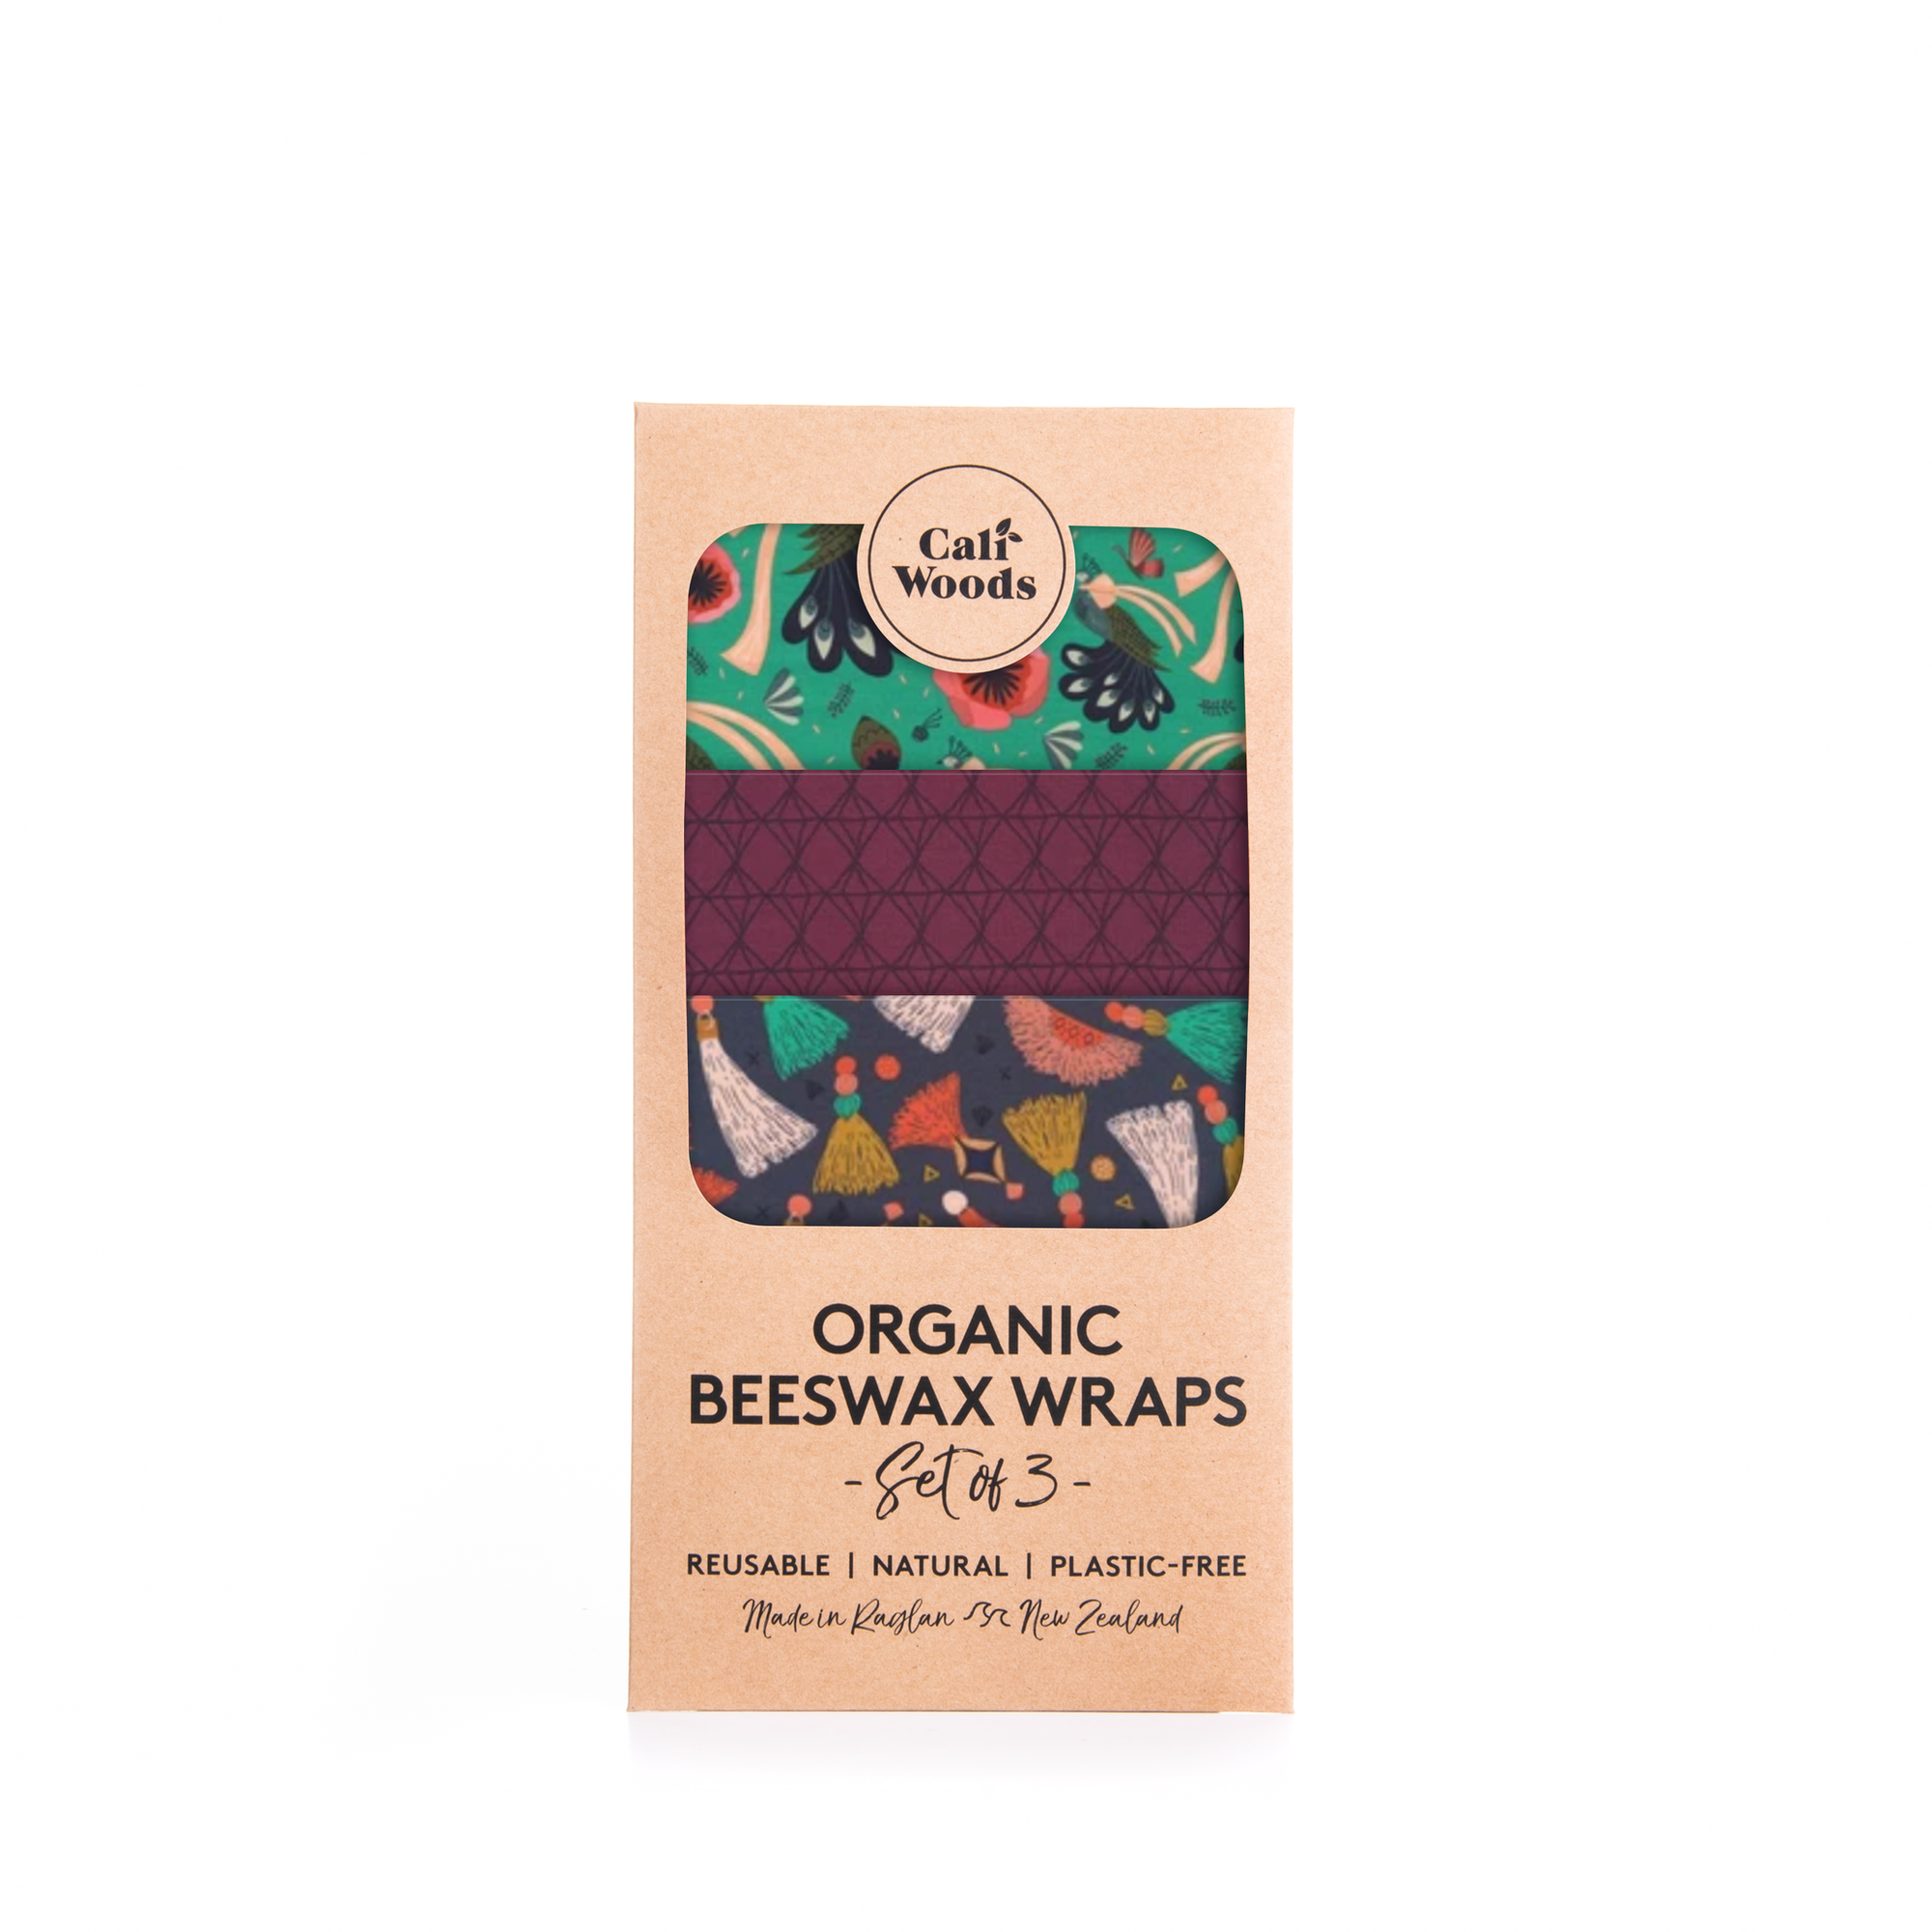 Caliwoods Organic Beeswax Wraps 3pk - Urban Naturals